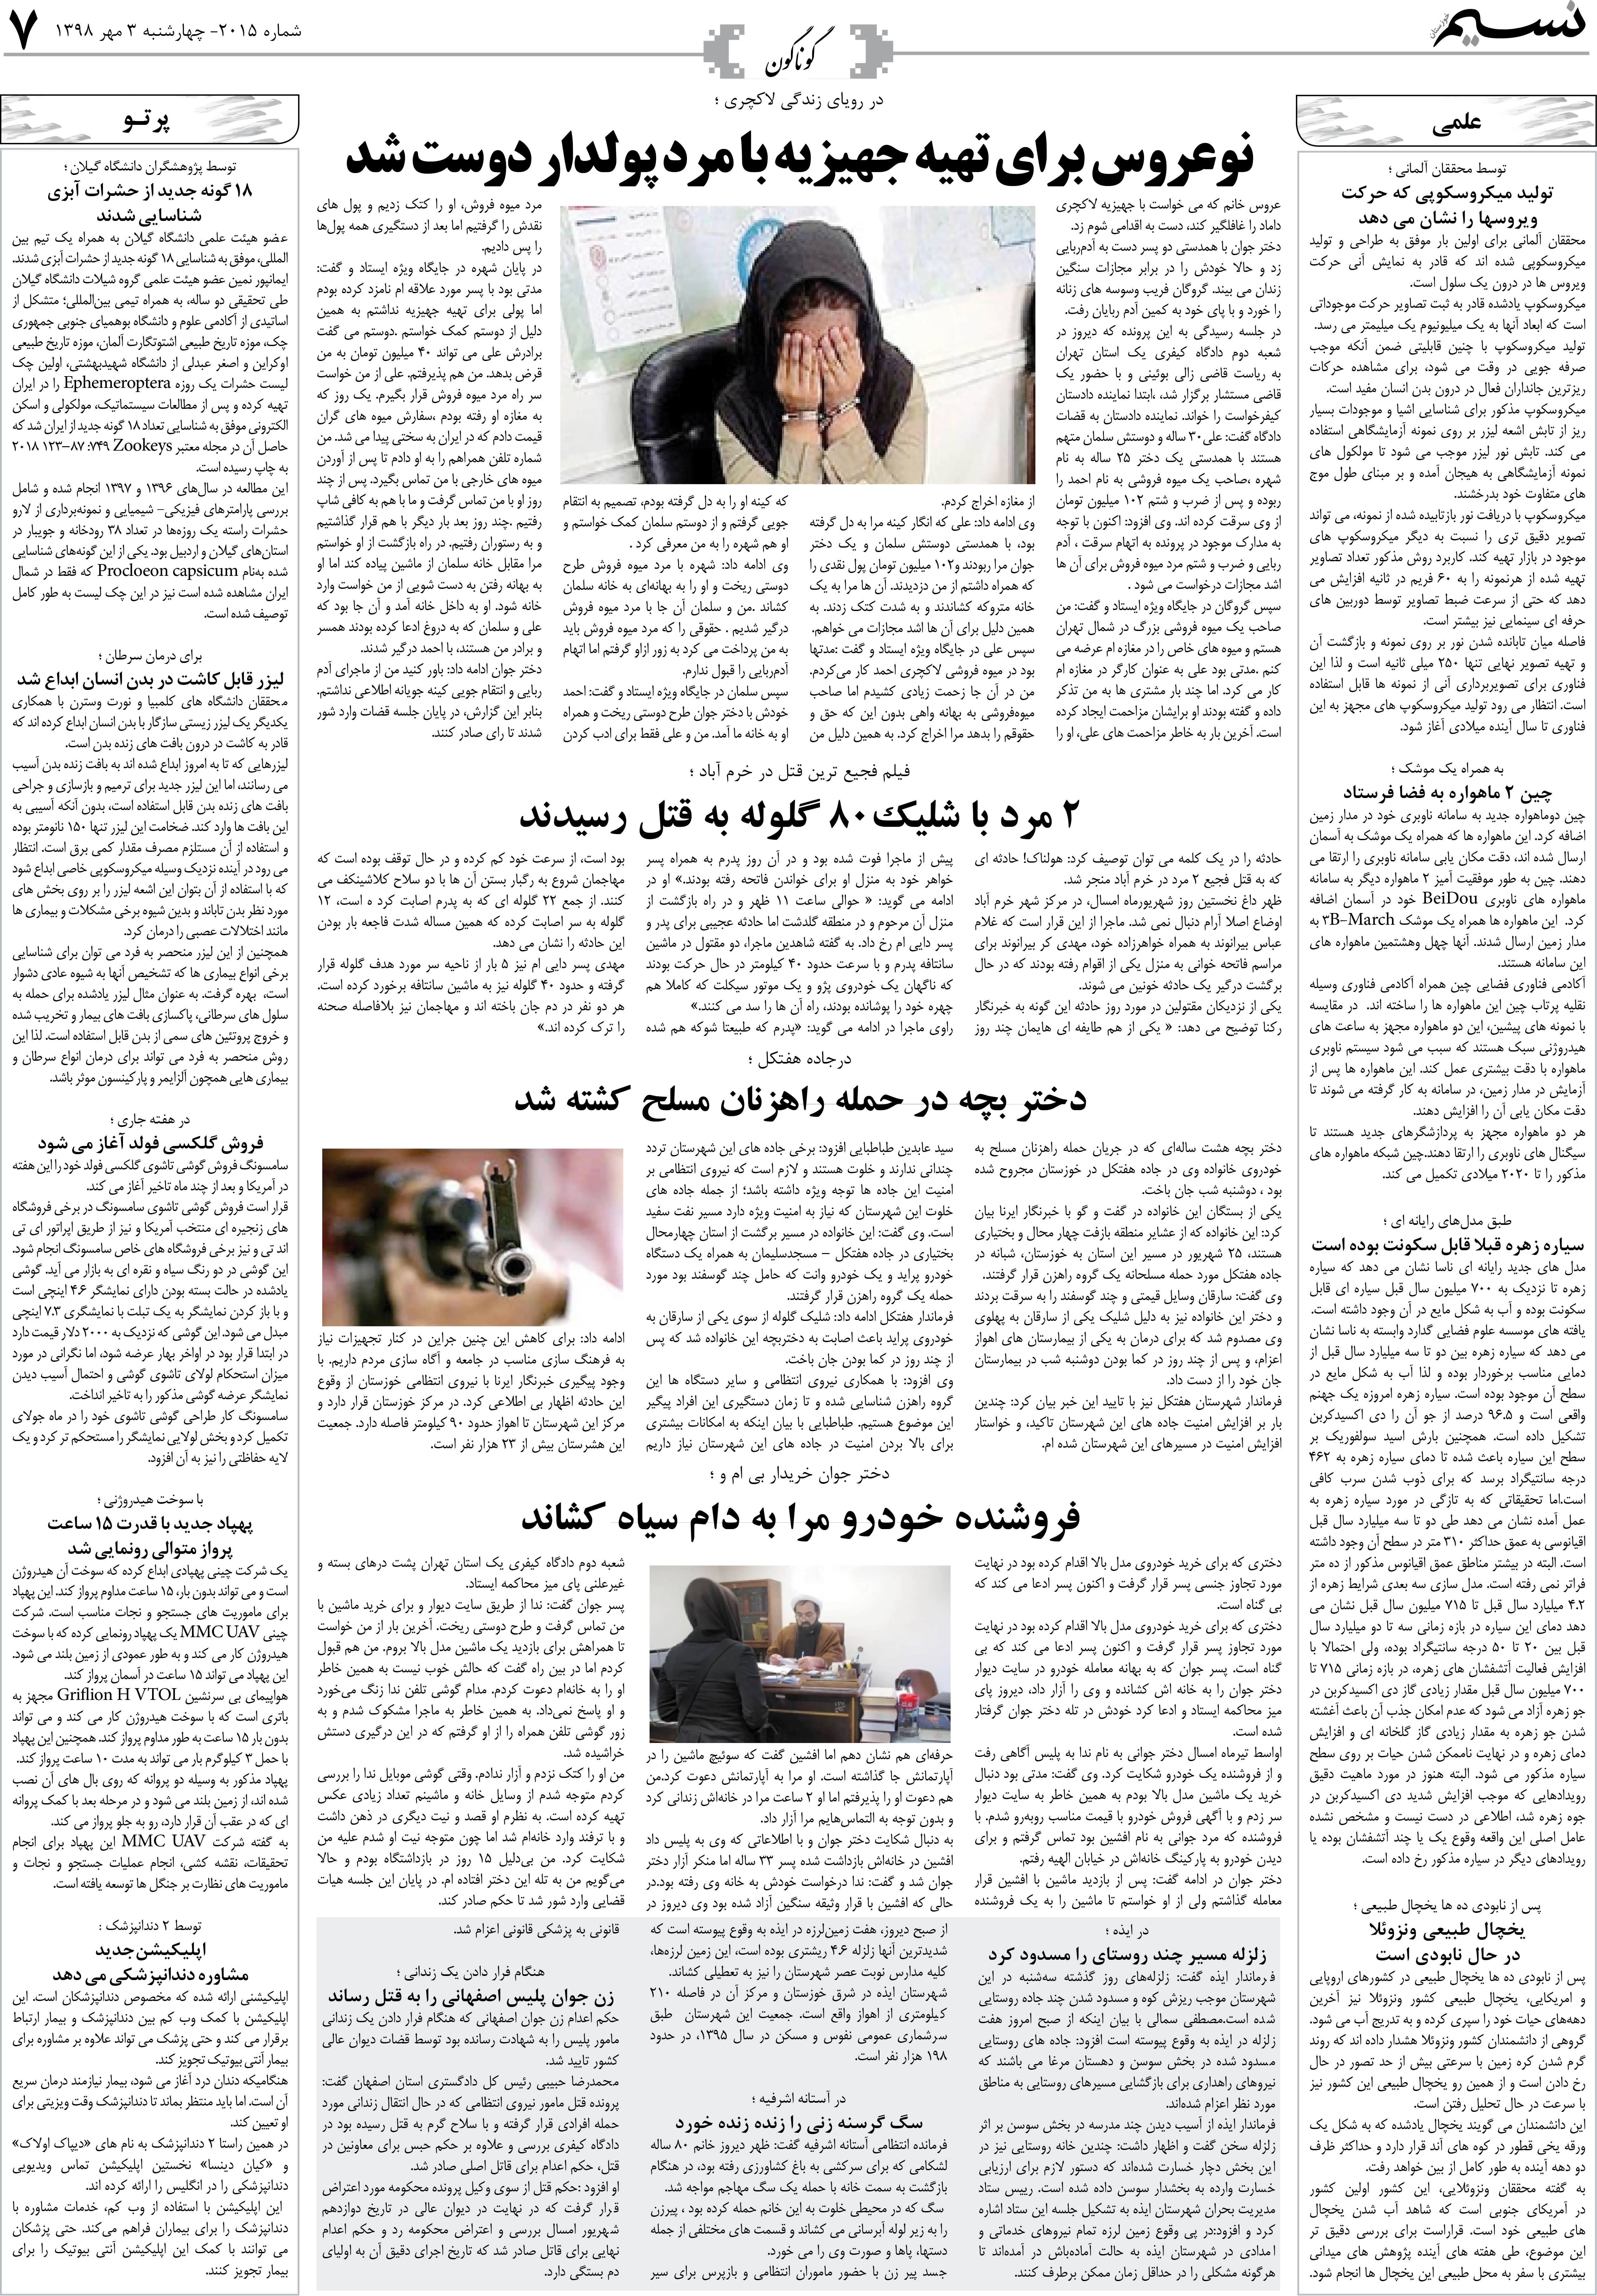 صفحه گوناگون روزنامه نسیم شماره 2015